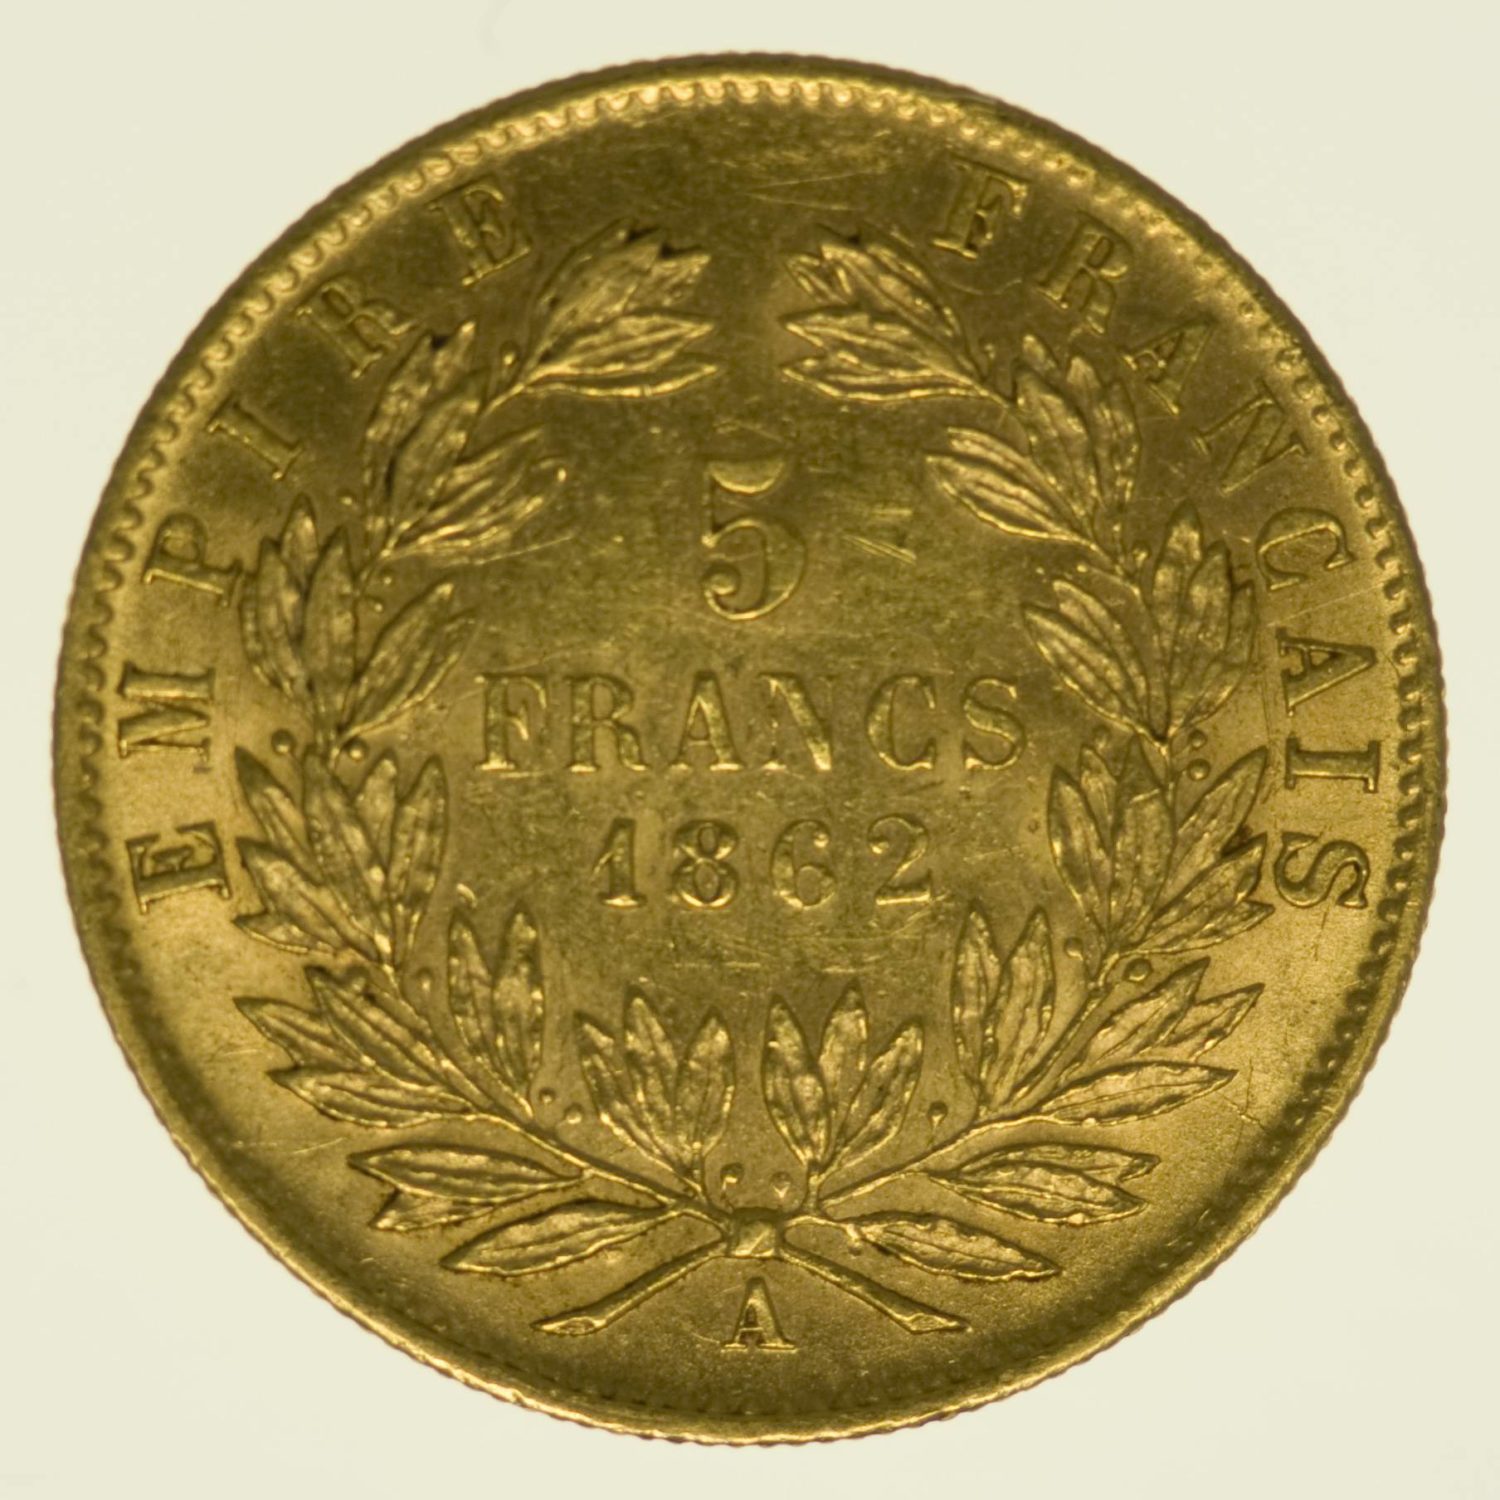 Frankreich Napoleon III. mit Kranz 5 Francs 1862 A Gold 1,45 Gramm fein RAR